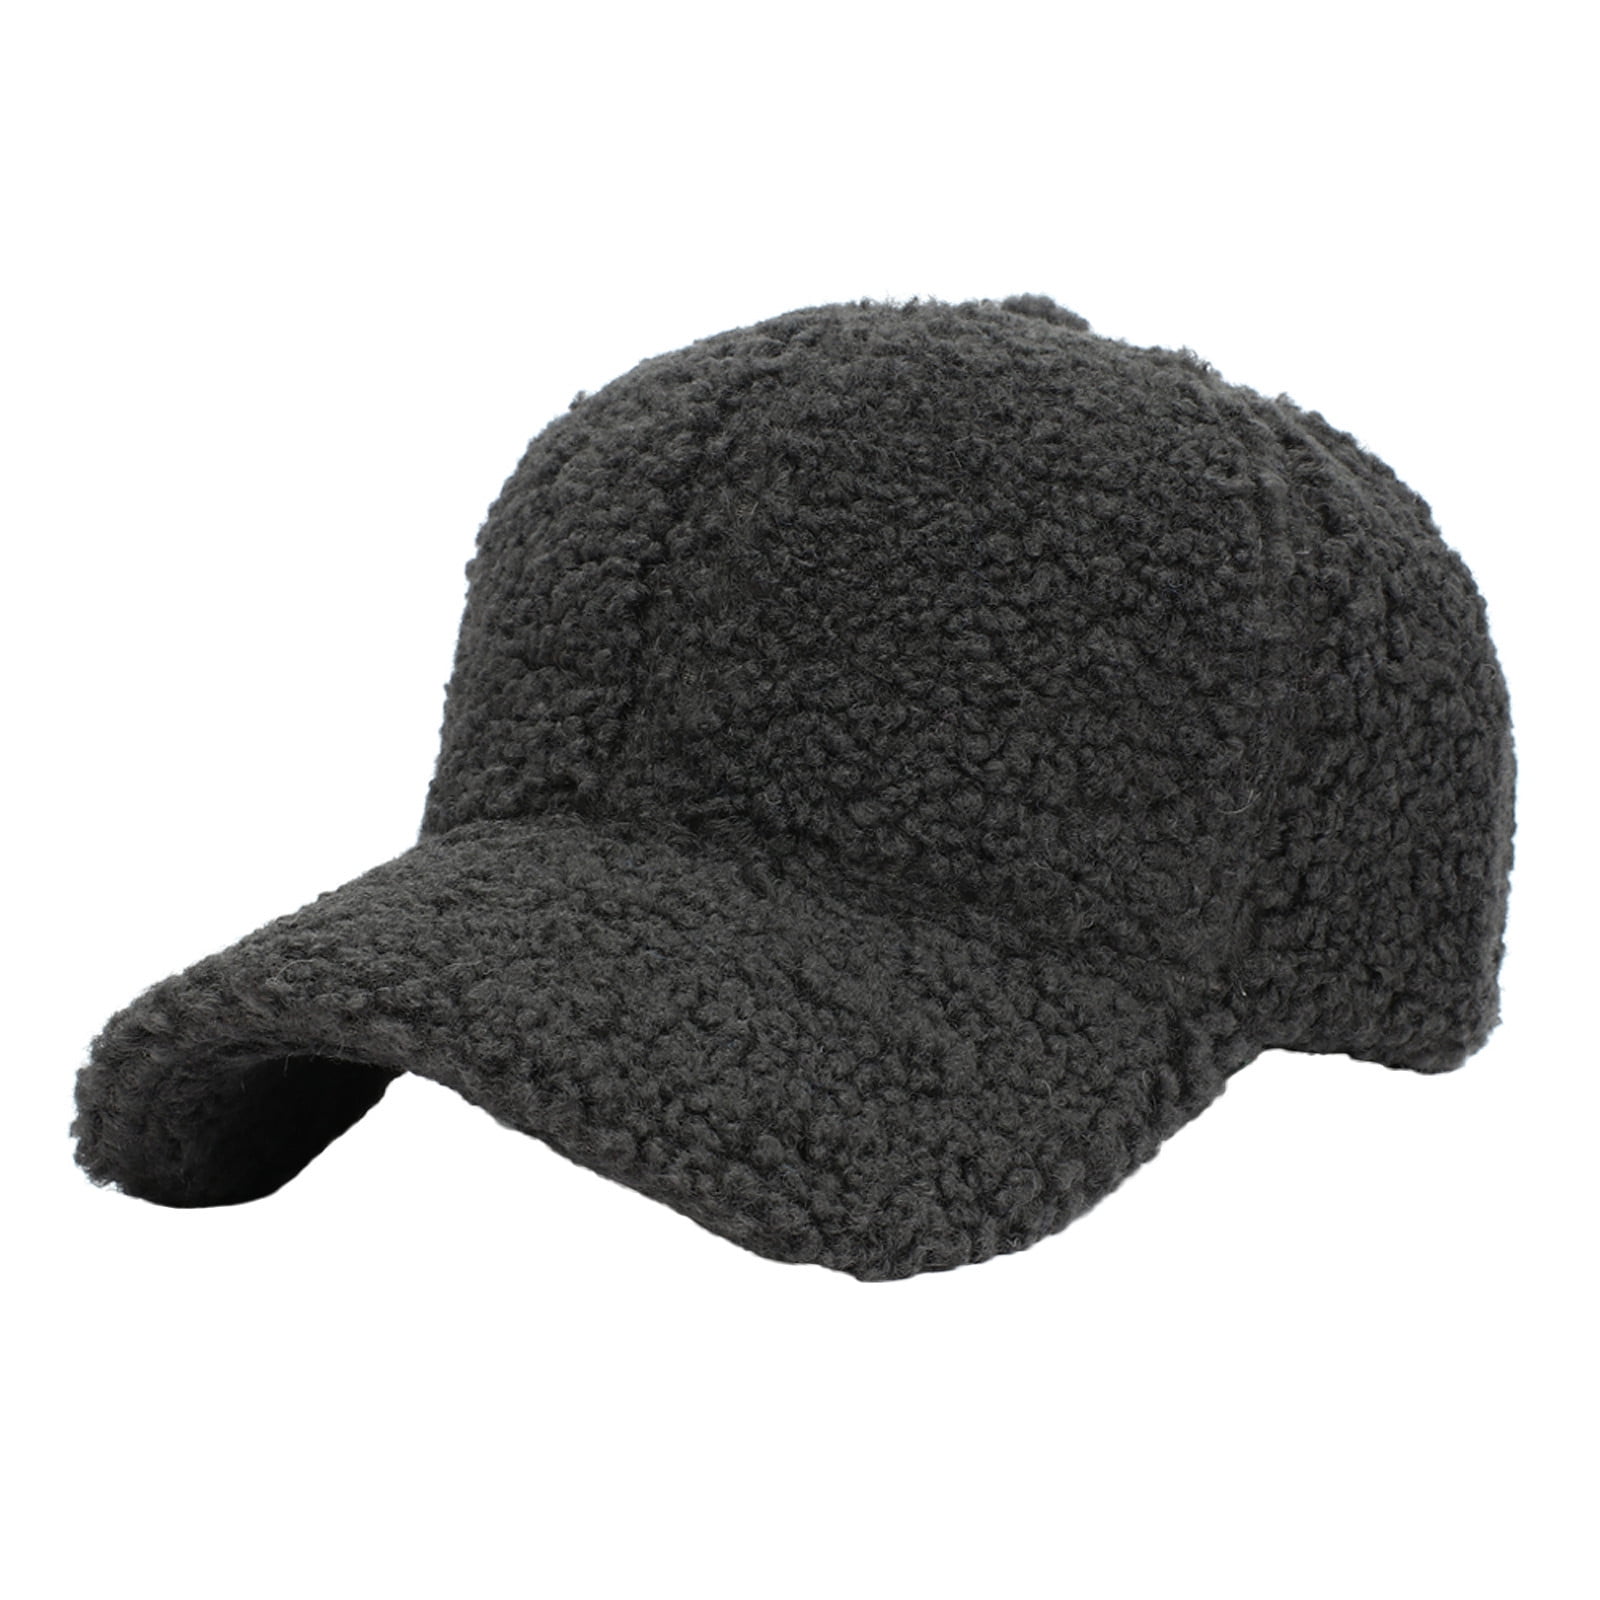 Lamb Wool Baseball Cap For Men Women Teddy Sports Hats Warm Winter